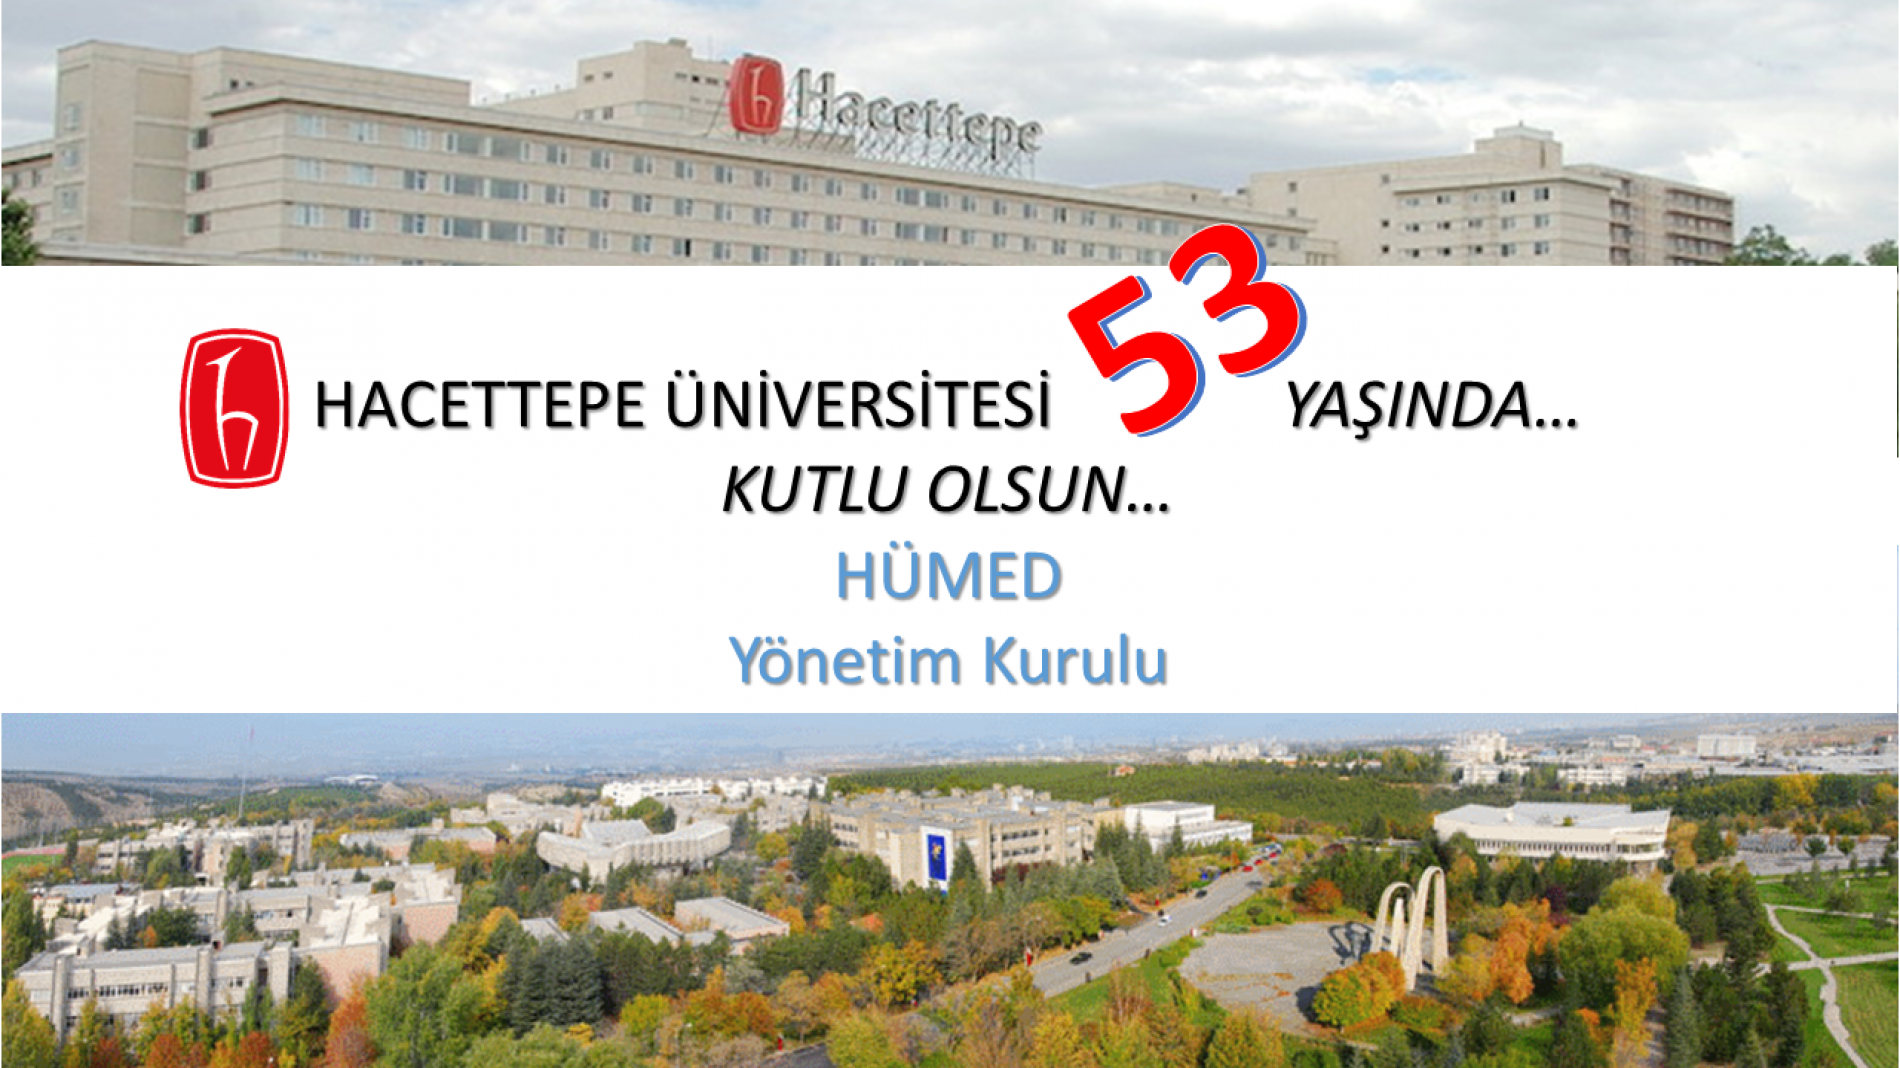 Hacettepe Üniversitesi’nin 53. Yaşı, 8 TEMMUZ DÜNYA HACETTEPELİLER GÜNÜ, Kutlu Olsun